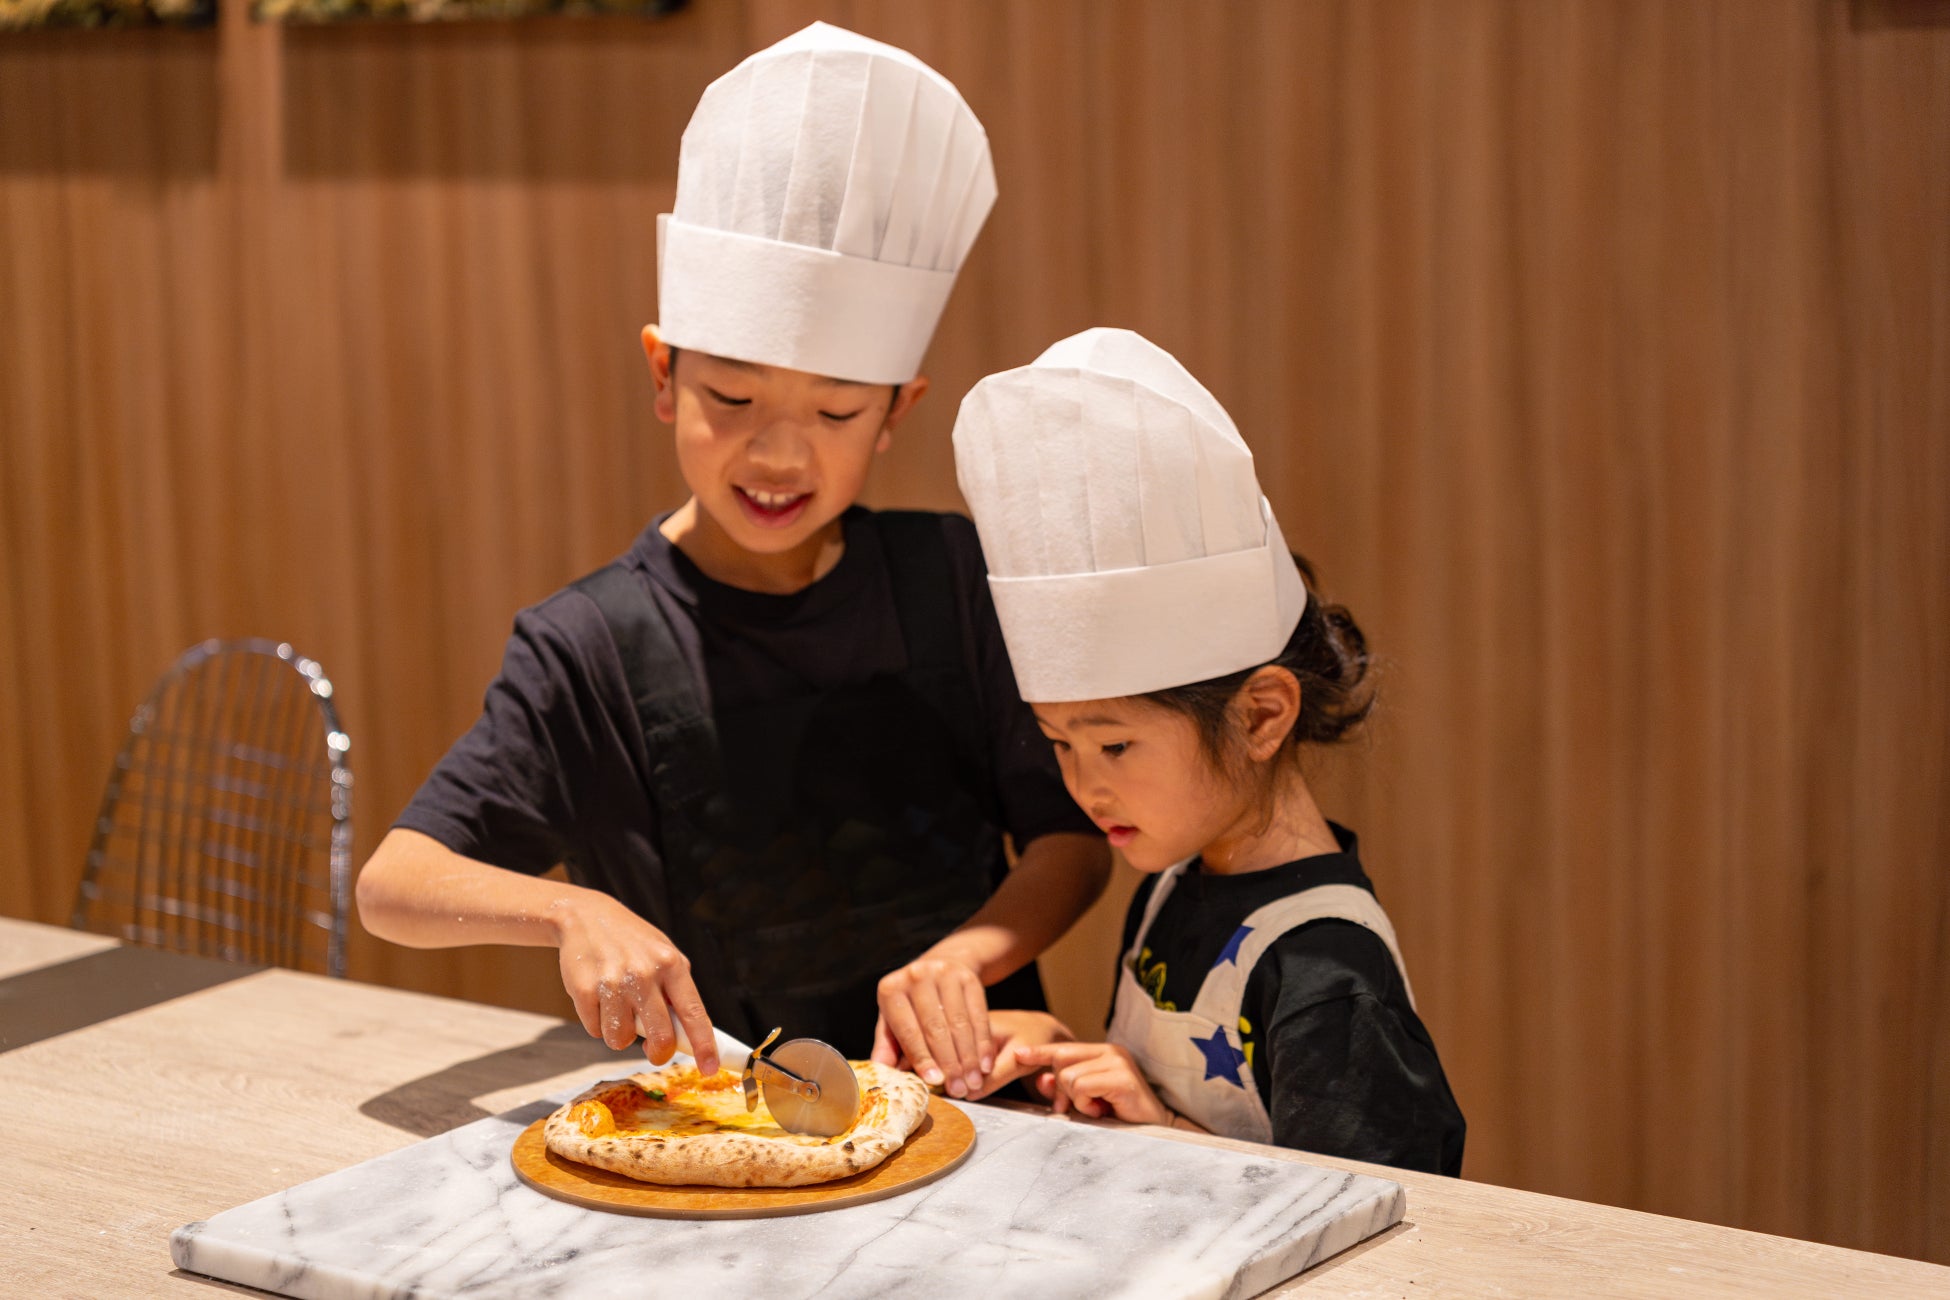 【新宿プリンスホテル】≪ゴールデンウィーク企画≫お子さまが主役の「食」の体験イベント「ランチブッフェ付きピザ作り体験」を開催